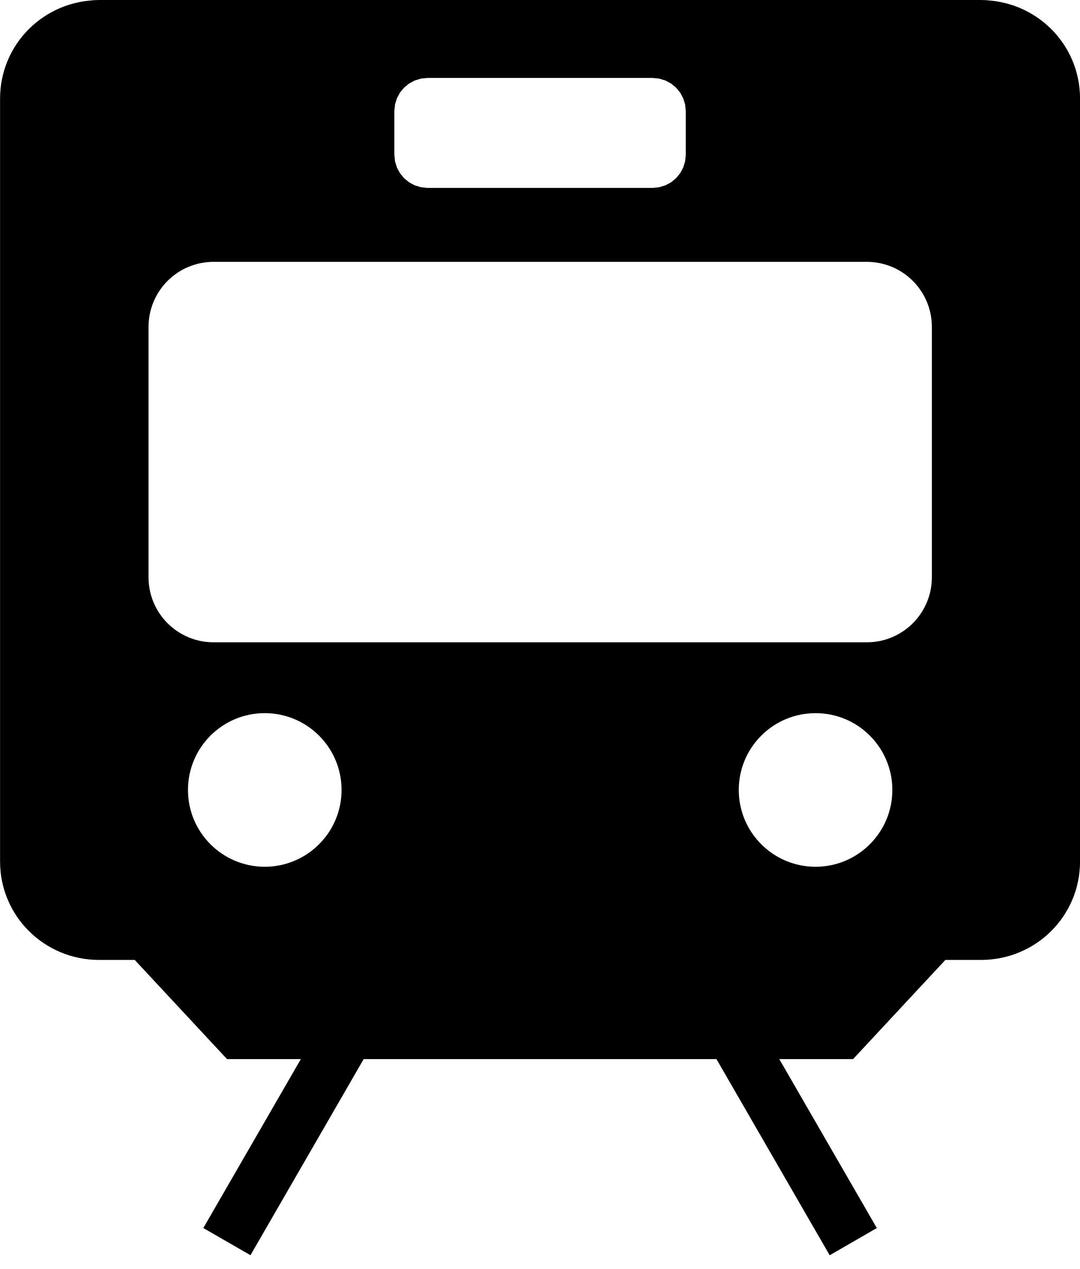 Train Pictogram png transparent